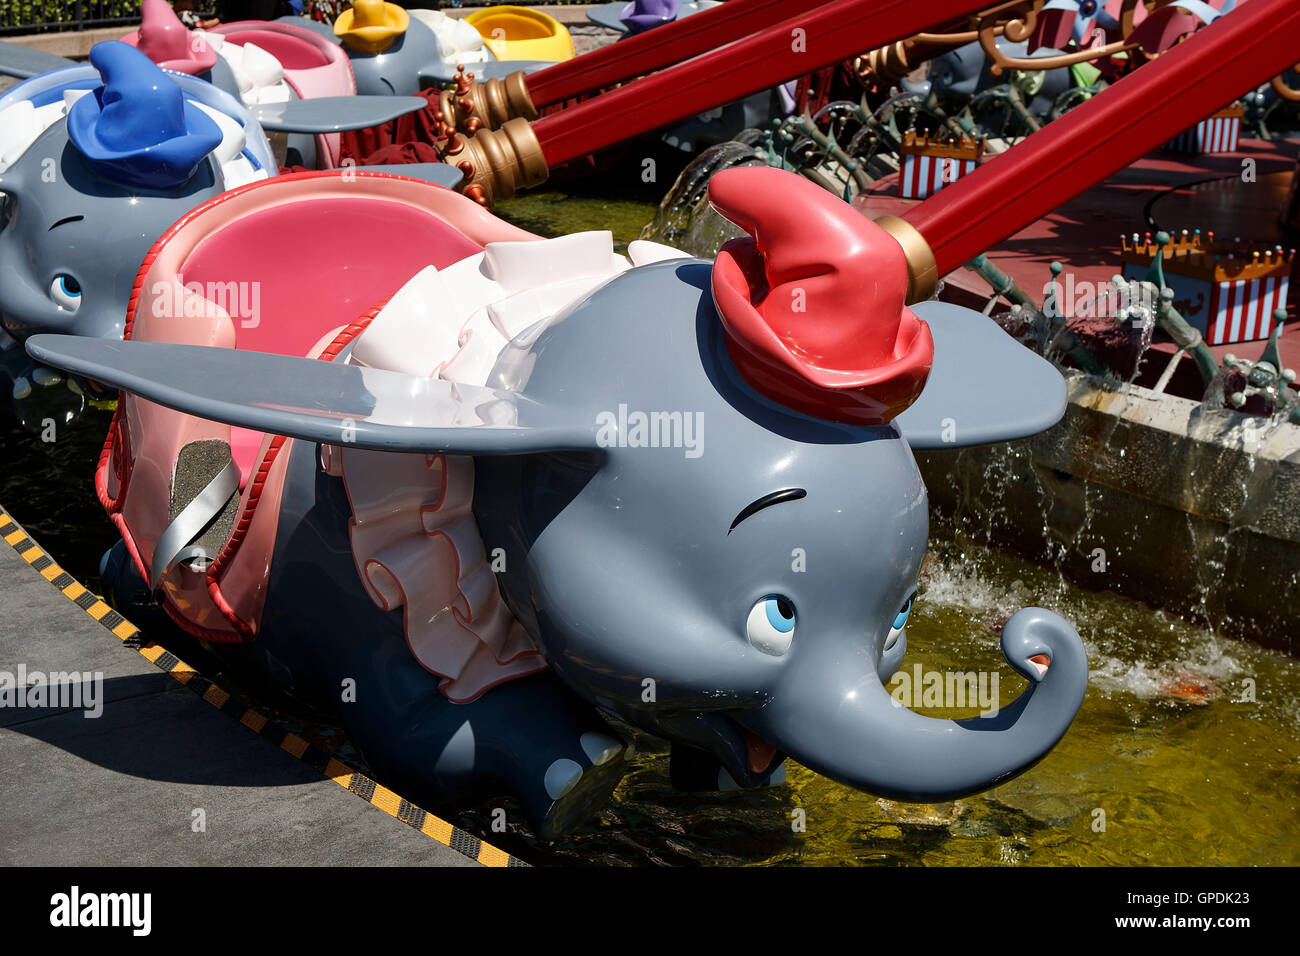 Sur le caractère Dumbo Dumbo the Flying Elephant ride, Disneyland, Anaheim, Californie, États-Unis d'Amérique Banque D'Images